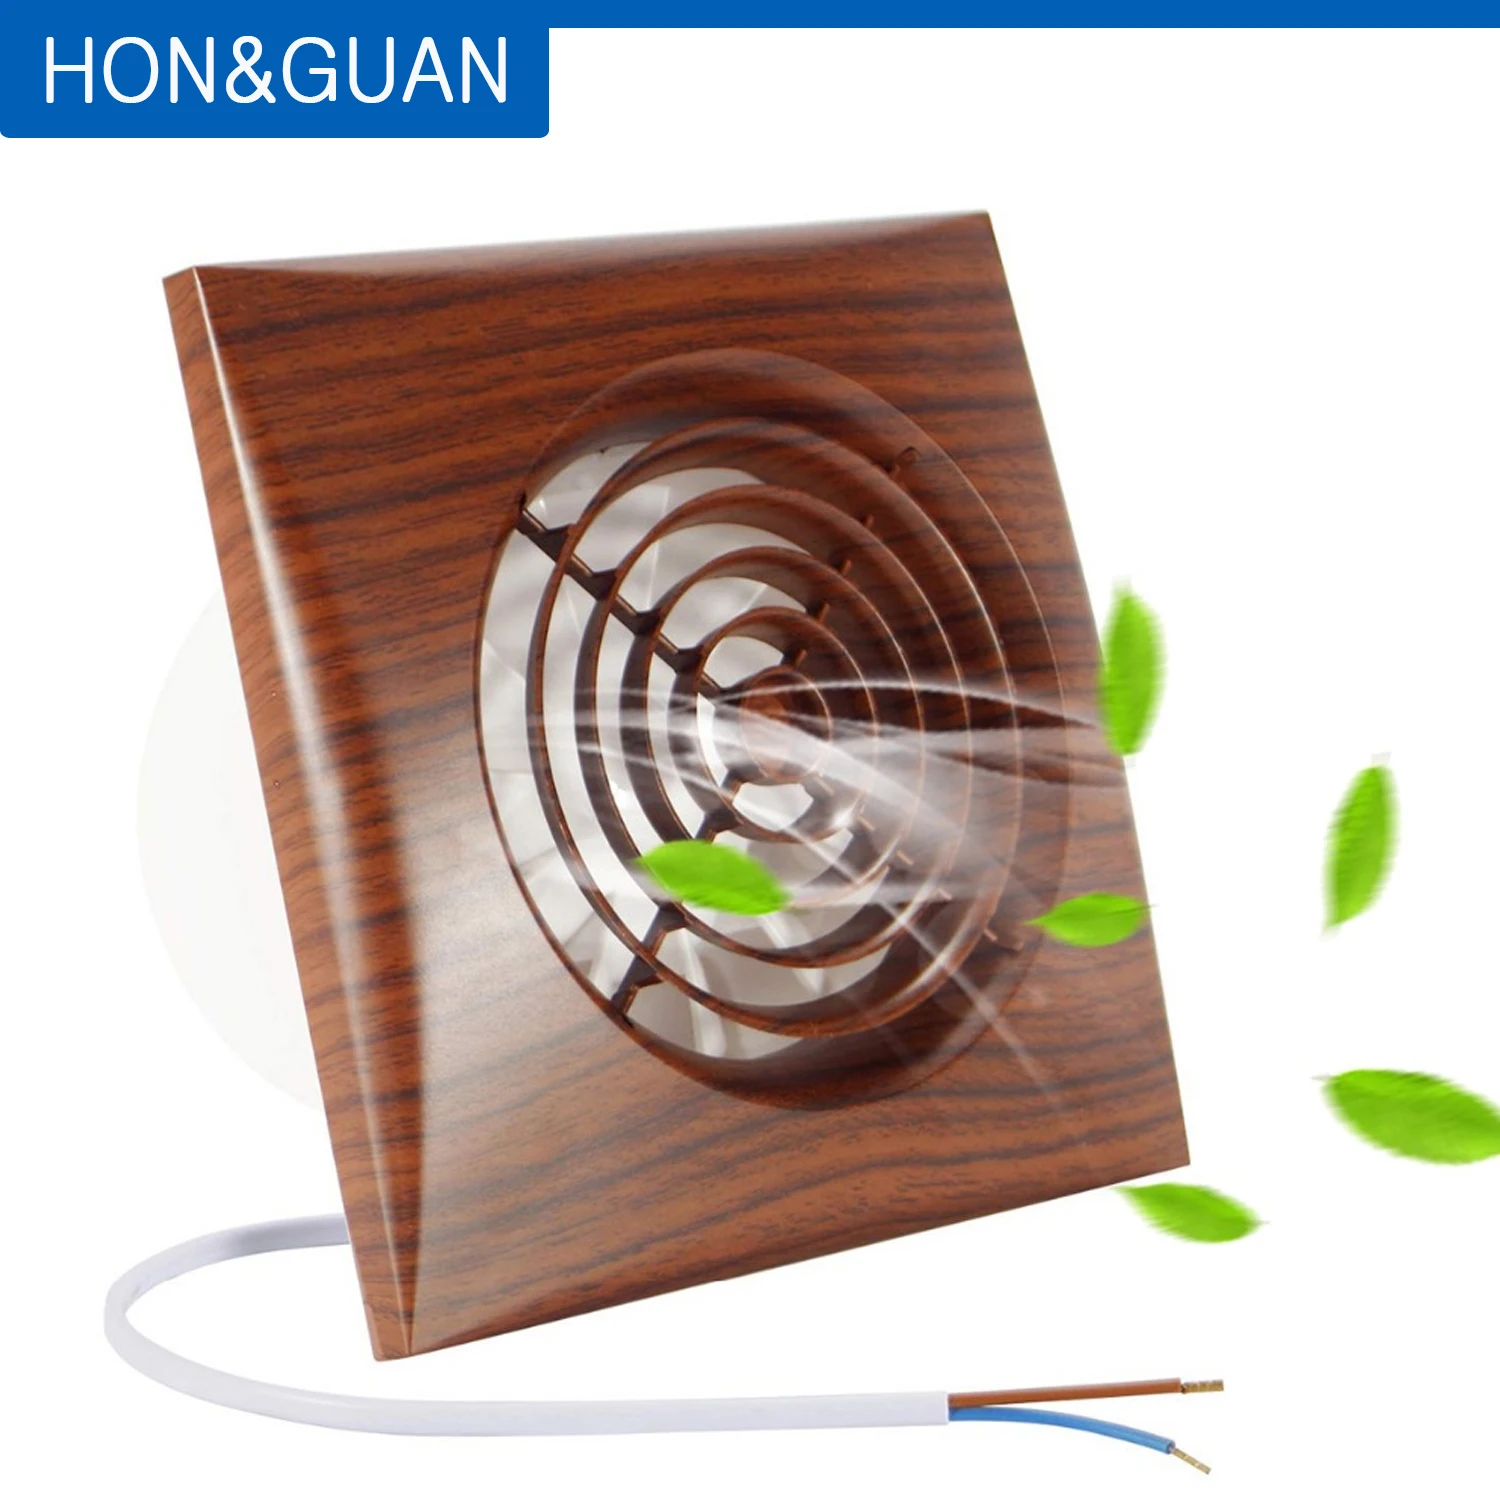 Hon&Guan 4inch Exhaust Fan Wall Window Mounted Exhaust Fan For